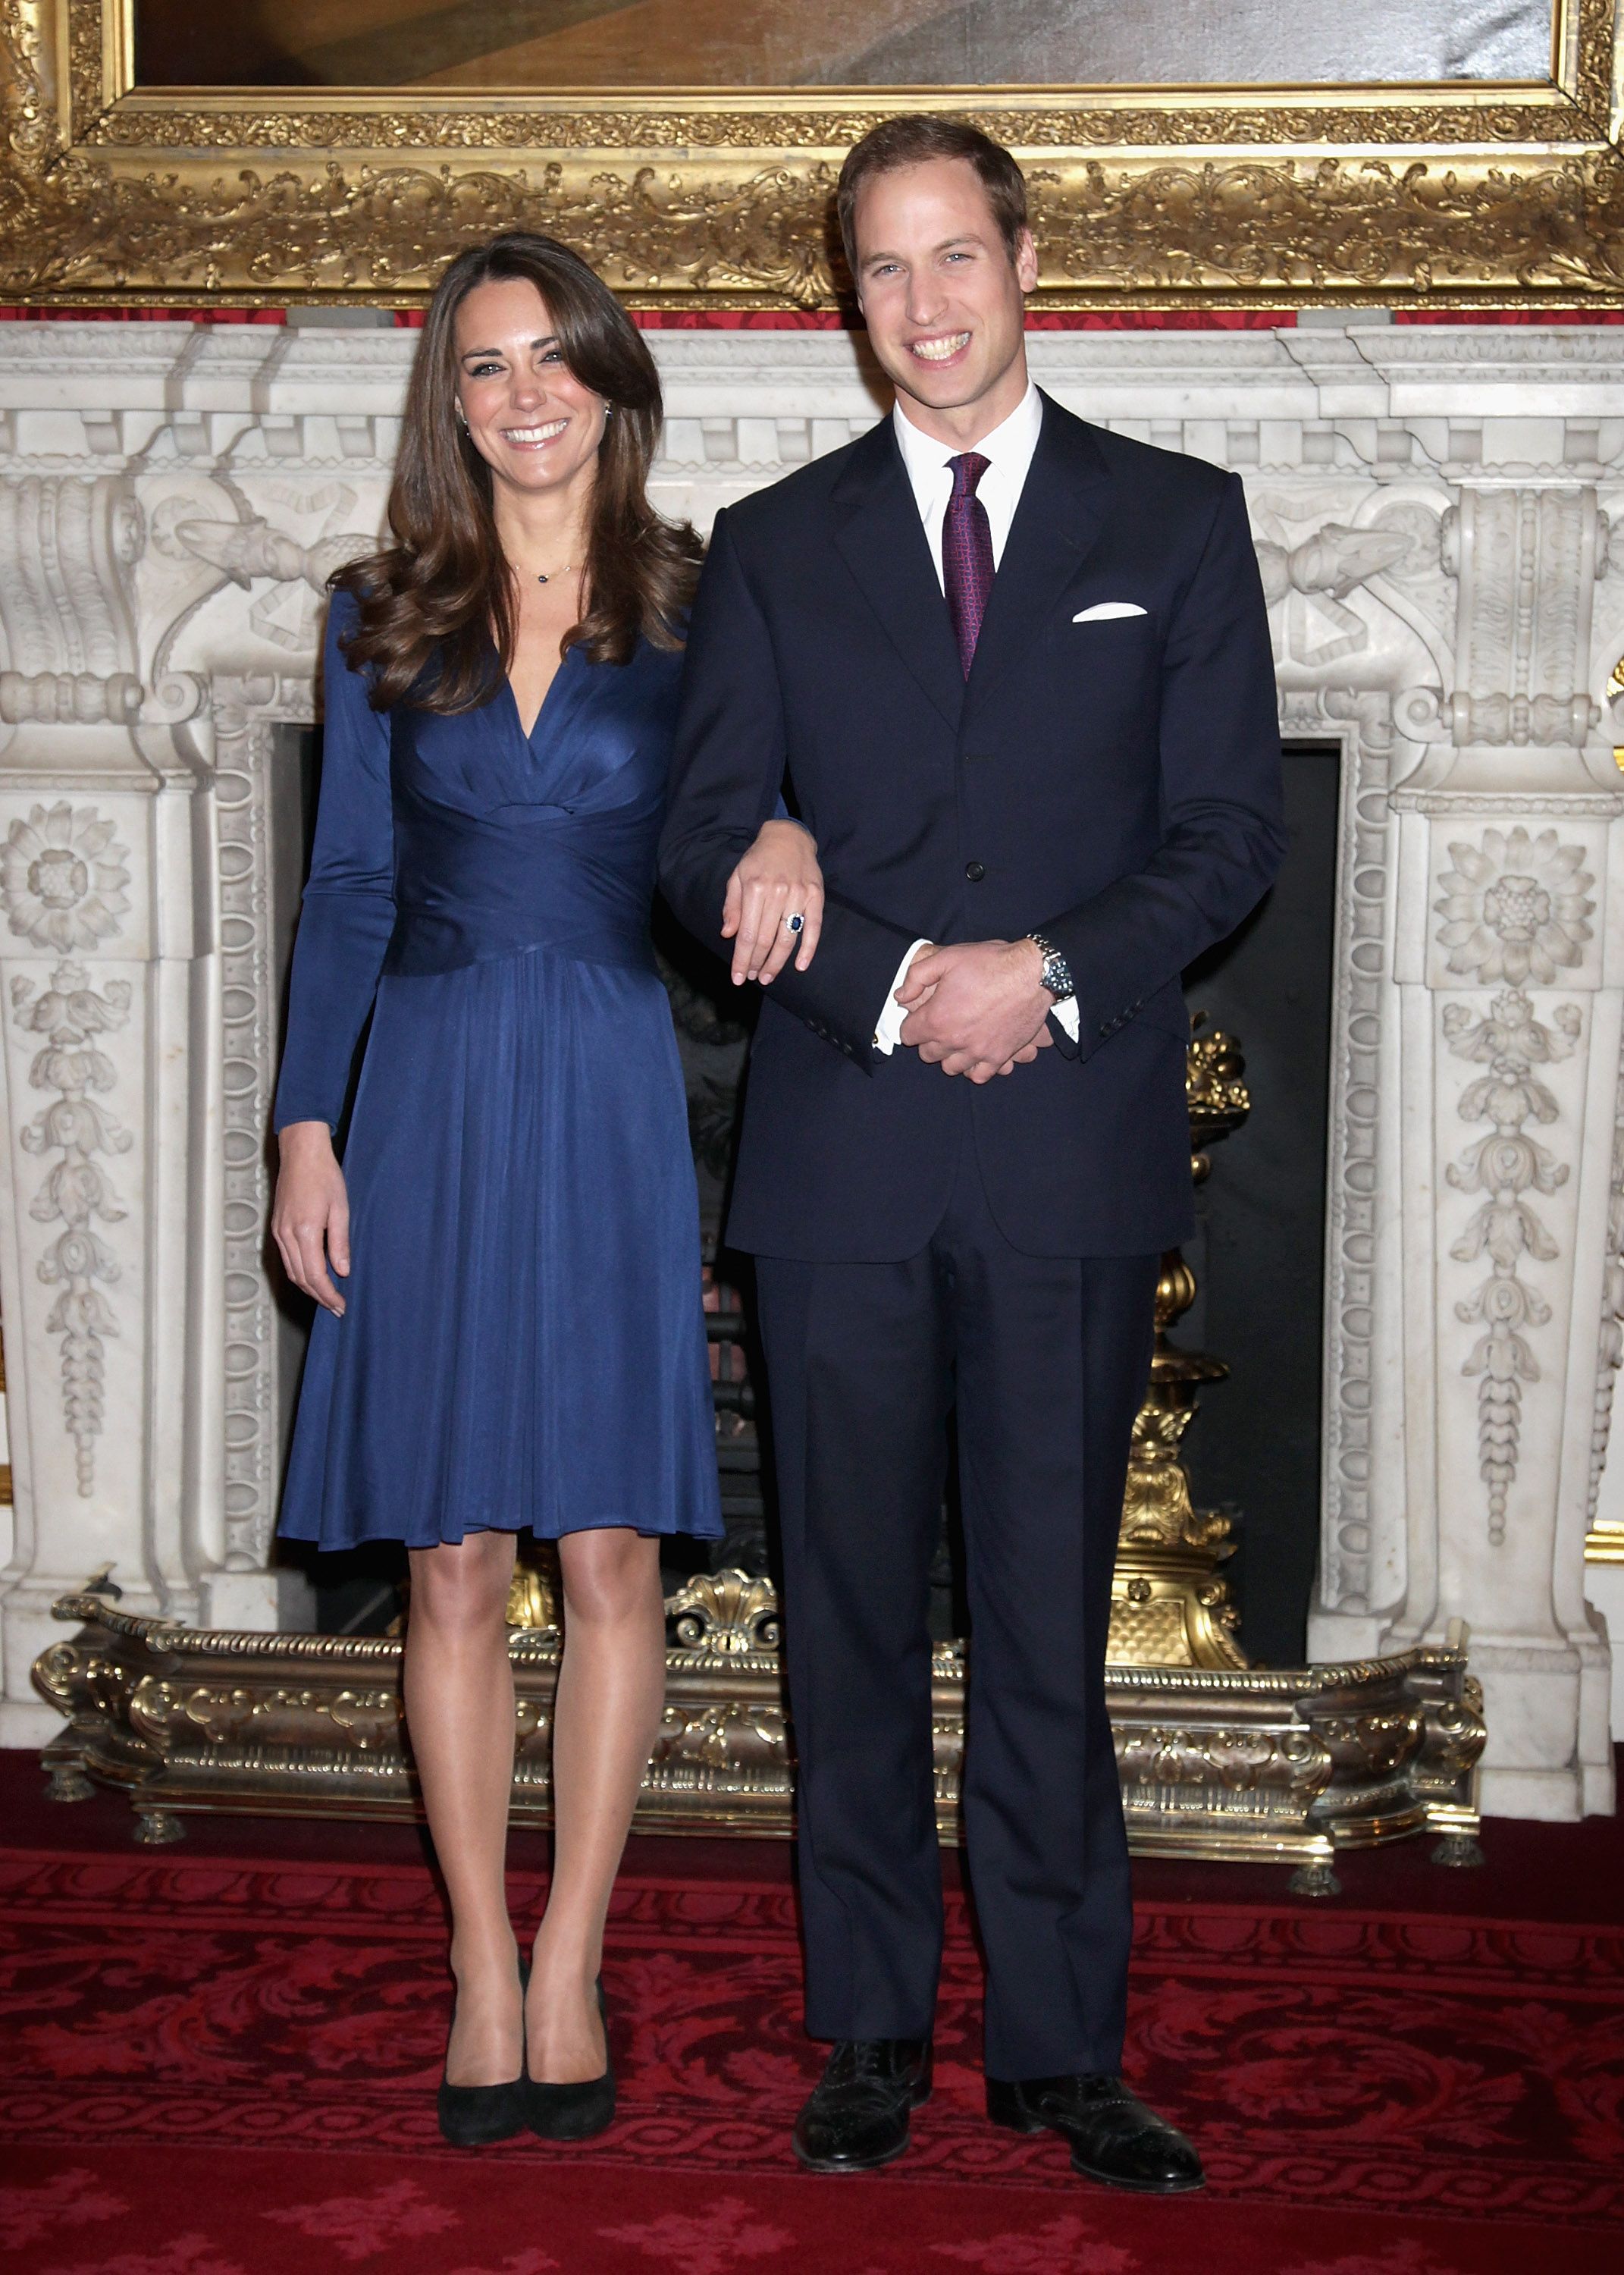 El príncipe William y Kate Middleton en los Apartamentos de Estado del Palacio de St James el 16 de noviembre de 2010, en Londres, Inglaterra. | Foto: Getty Images